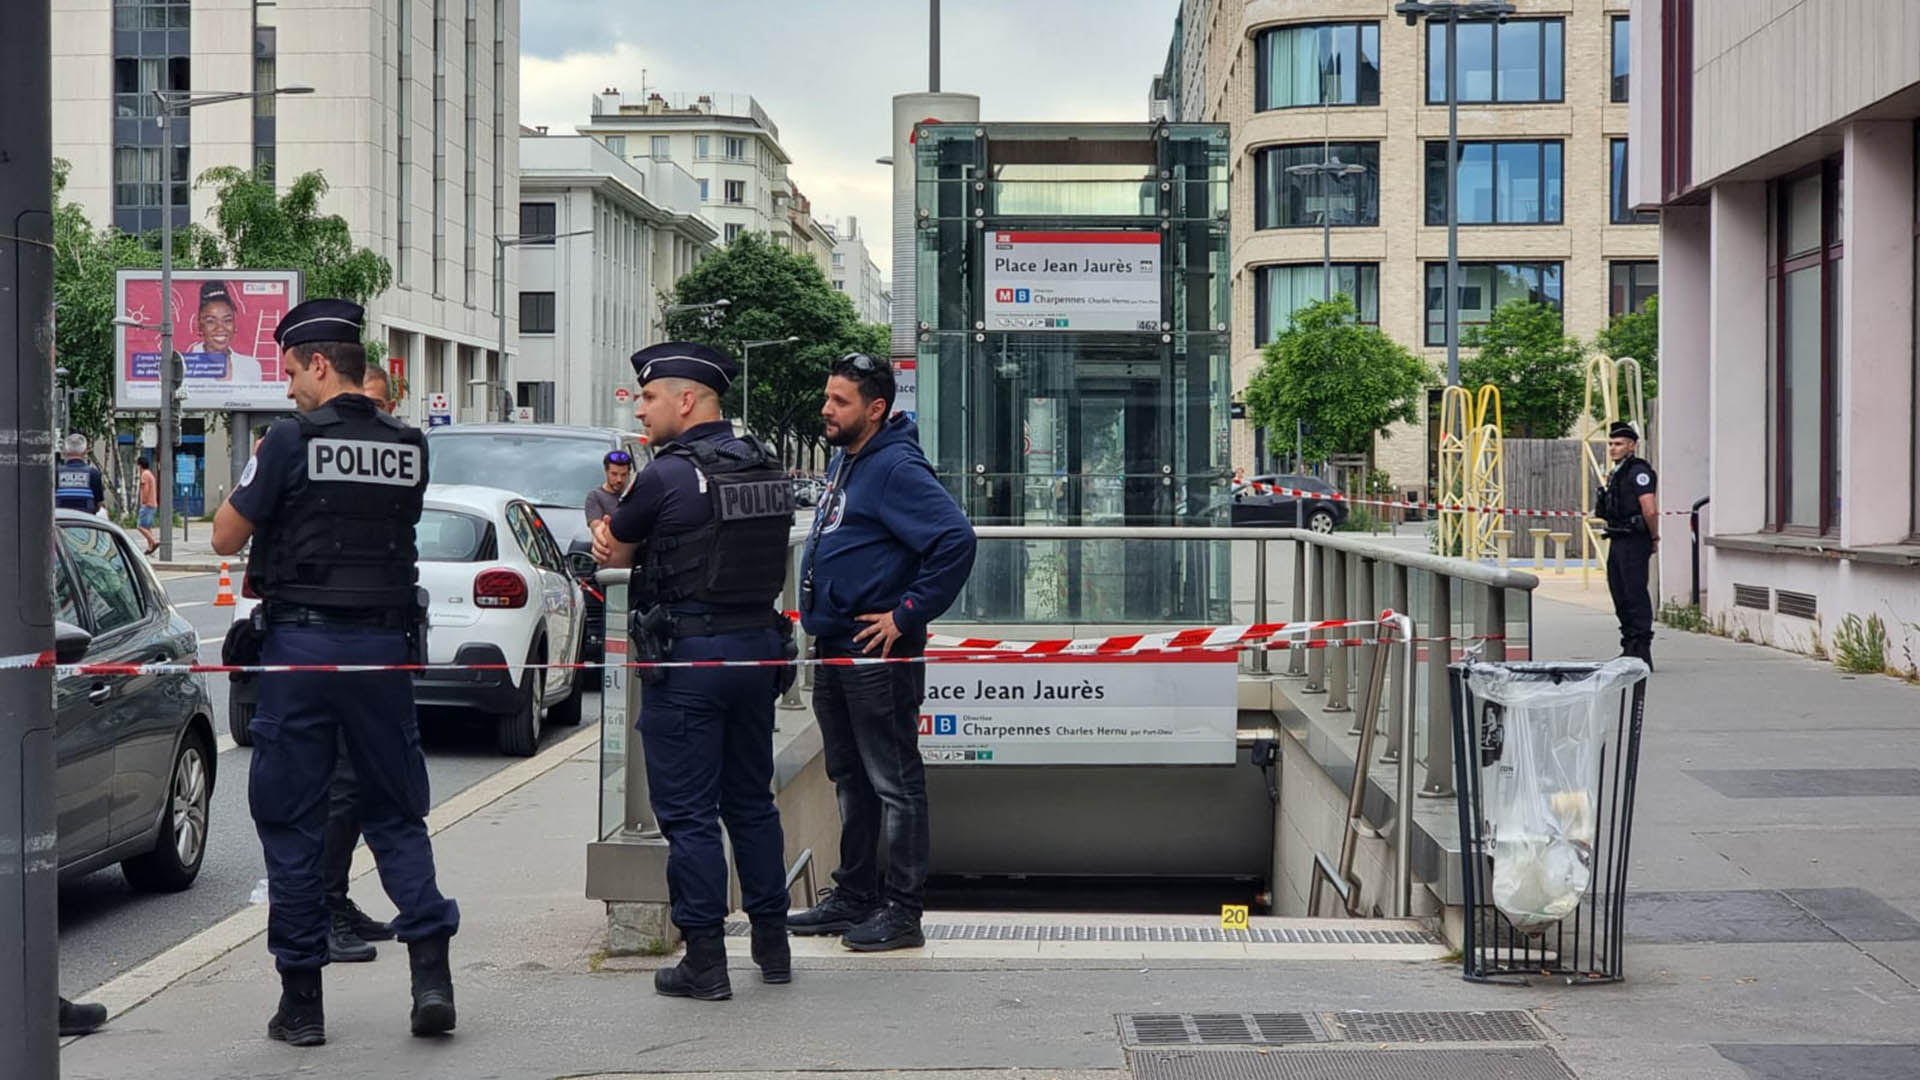 
                                 Hombre atacó a 3 personas con un cuchillo en un metro de Francia, autoridades detienen a un sospechoso 
                            